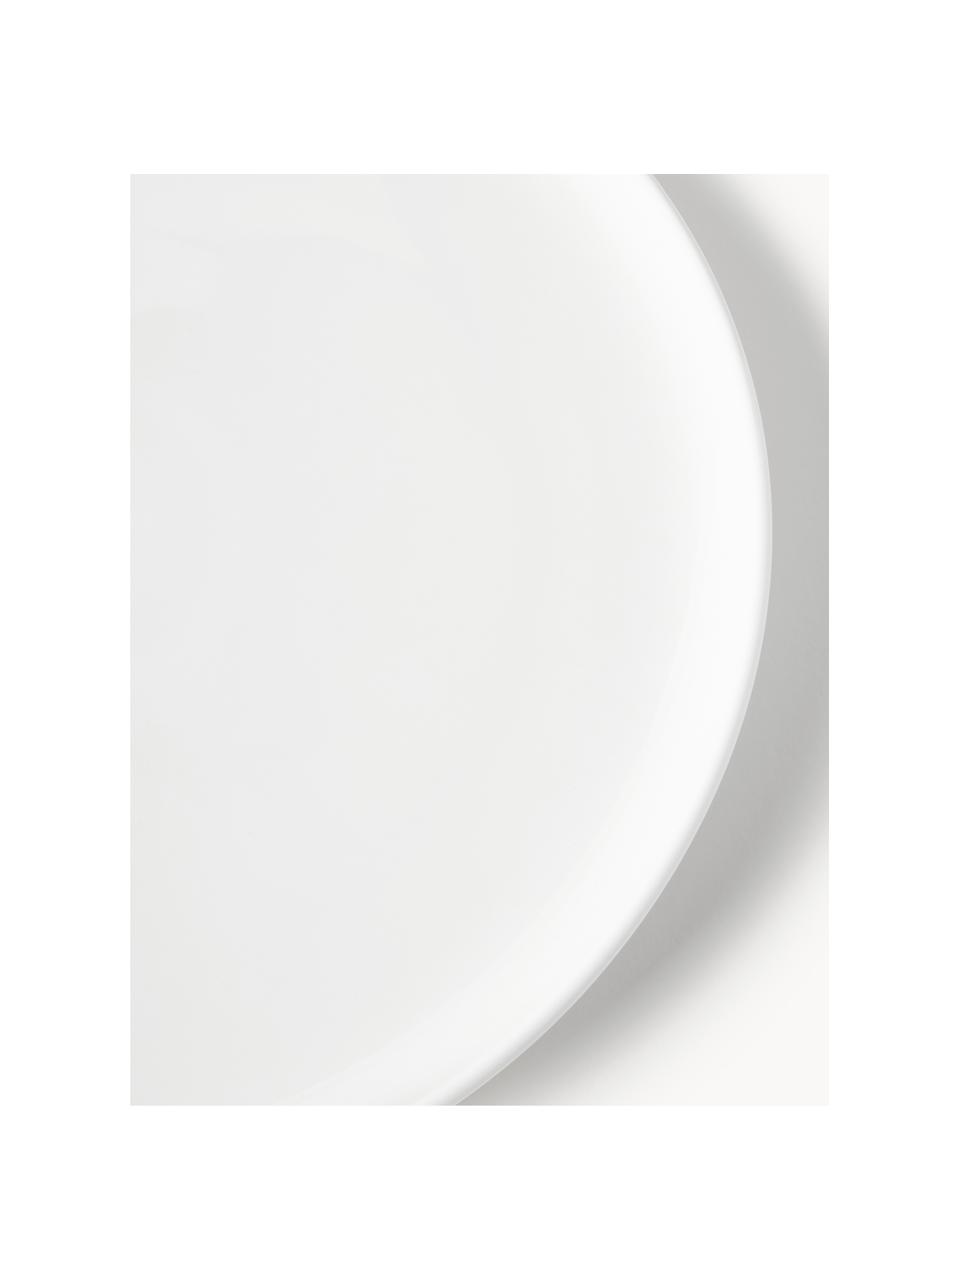 Saladier en porcelaine Nessa, Porcelaine de haute qualité, émaillé, Blanc cassé, haute brillance, Ø 25 x haut. 9 cm